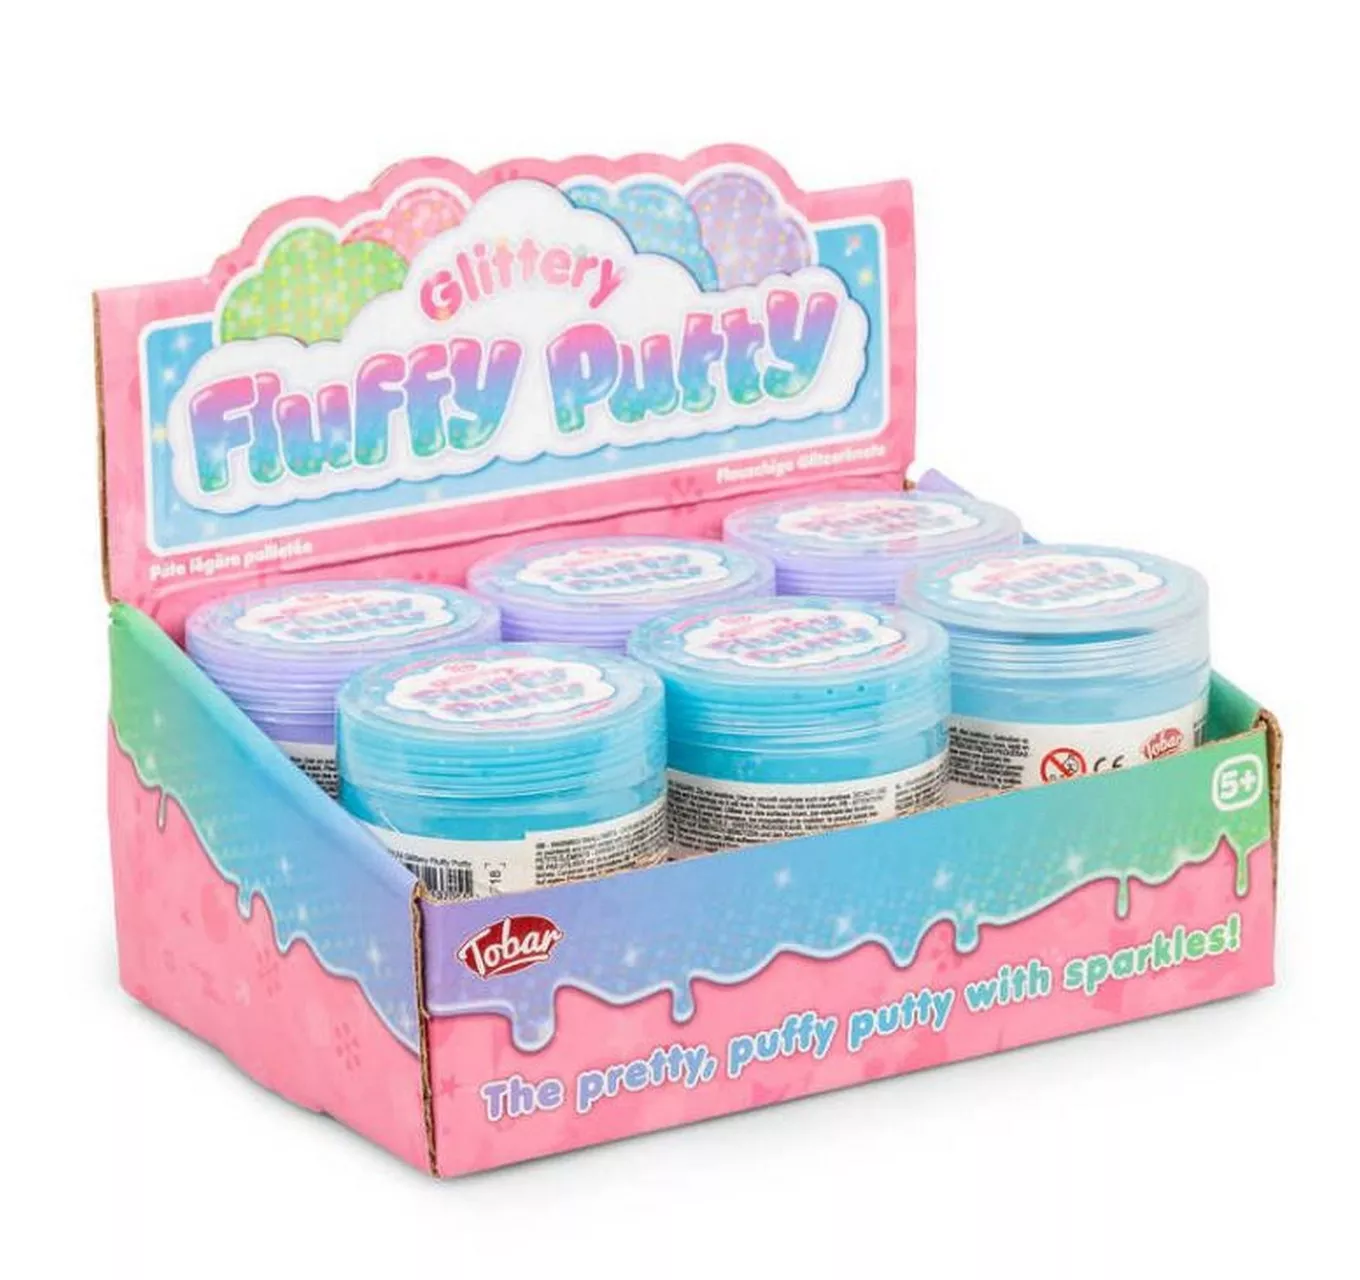 Glittery Fluffy Putty - Each